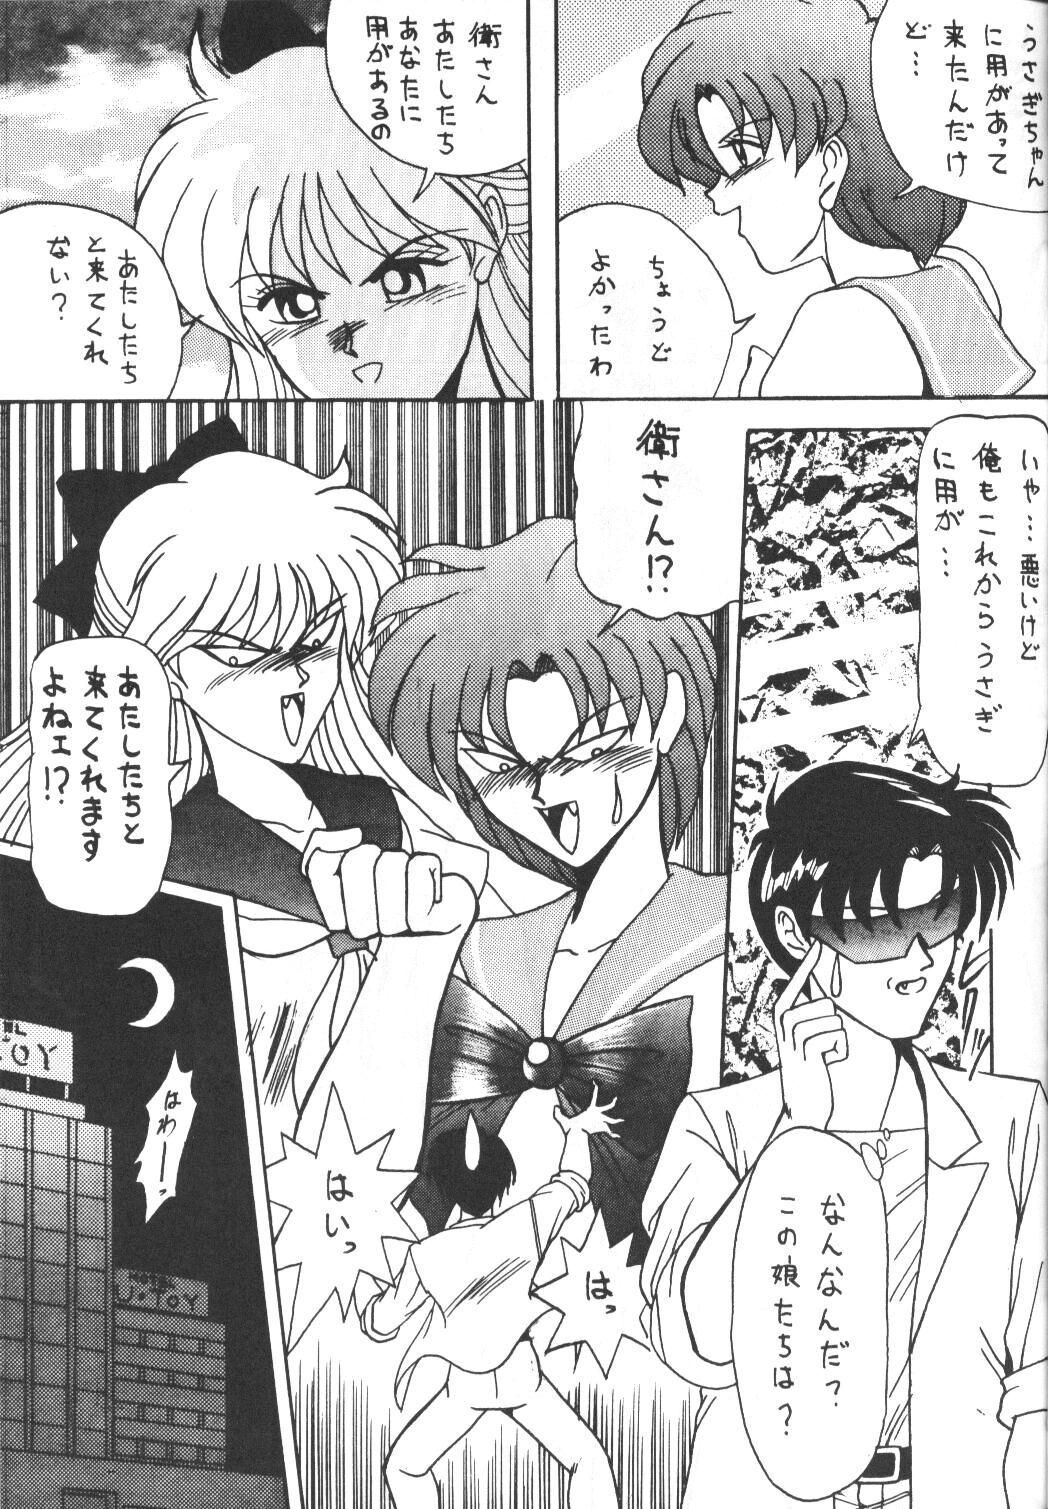 Gaystraight Make Up 2 - Sailor moon Camera - Page 11